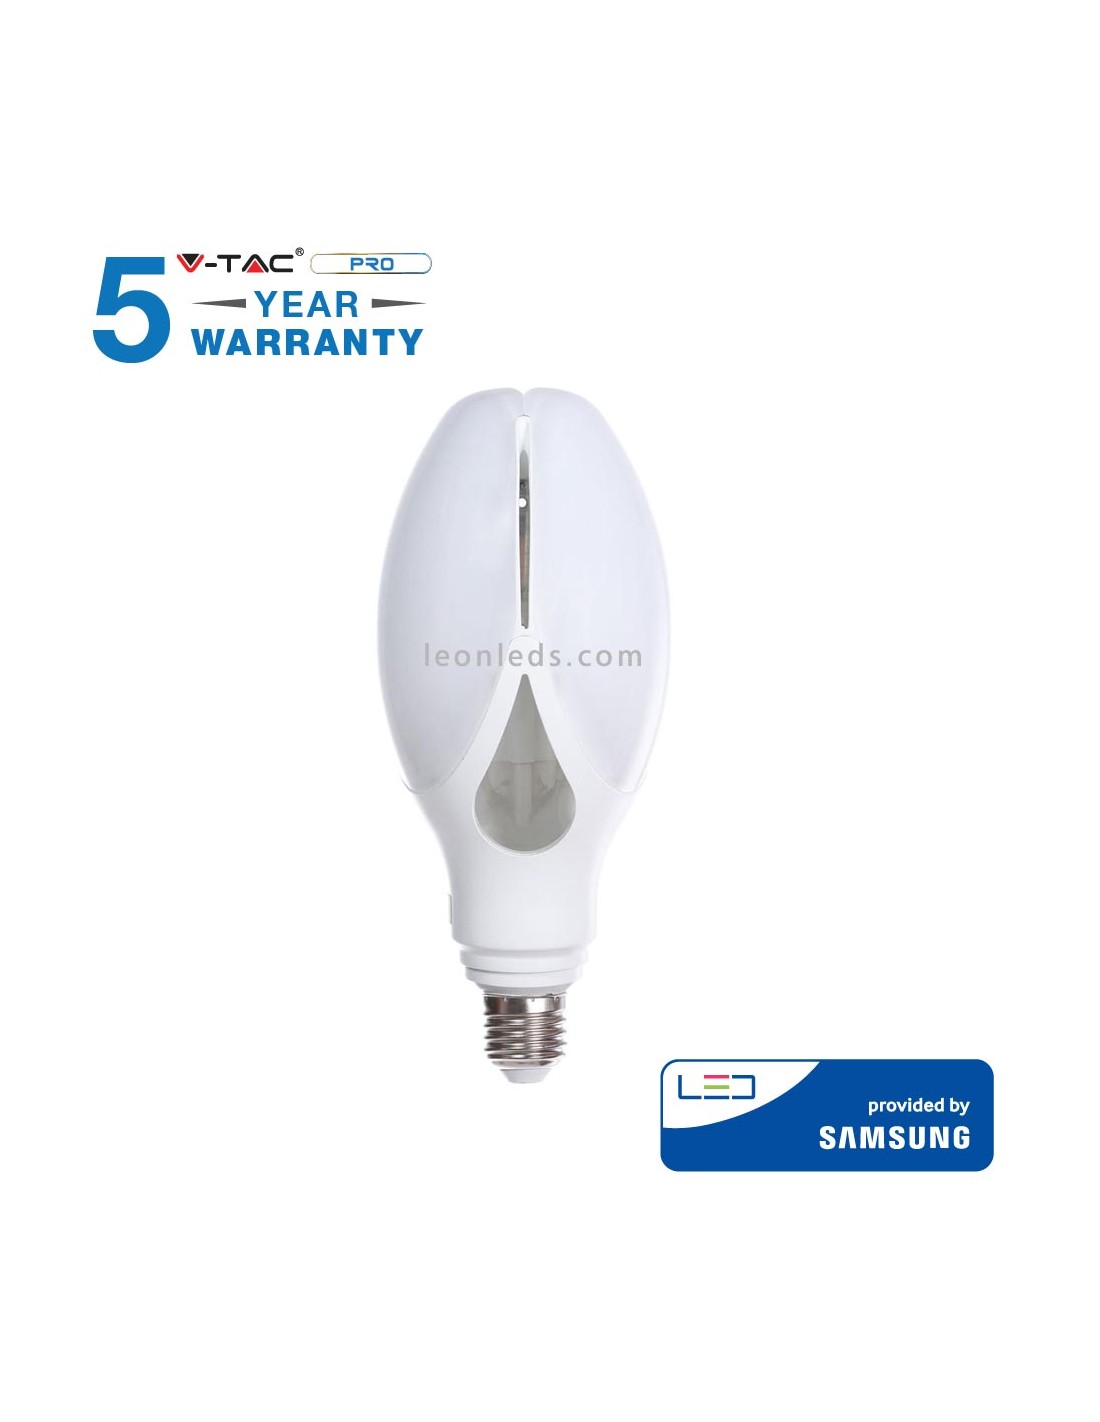 Ampoule LED E27 36W, Acheter des ampoules bon marché